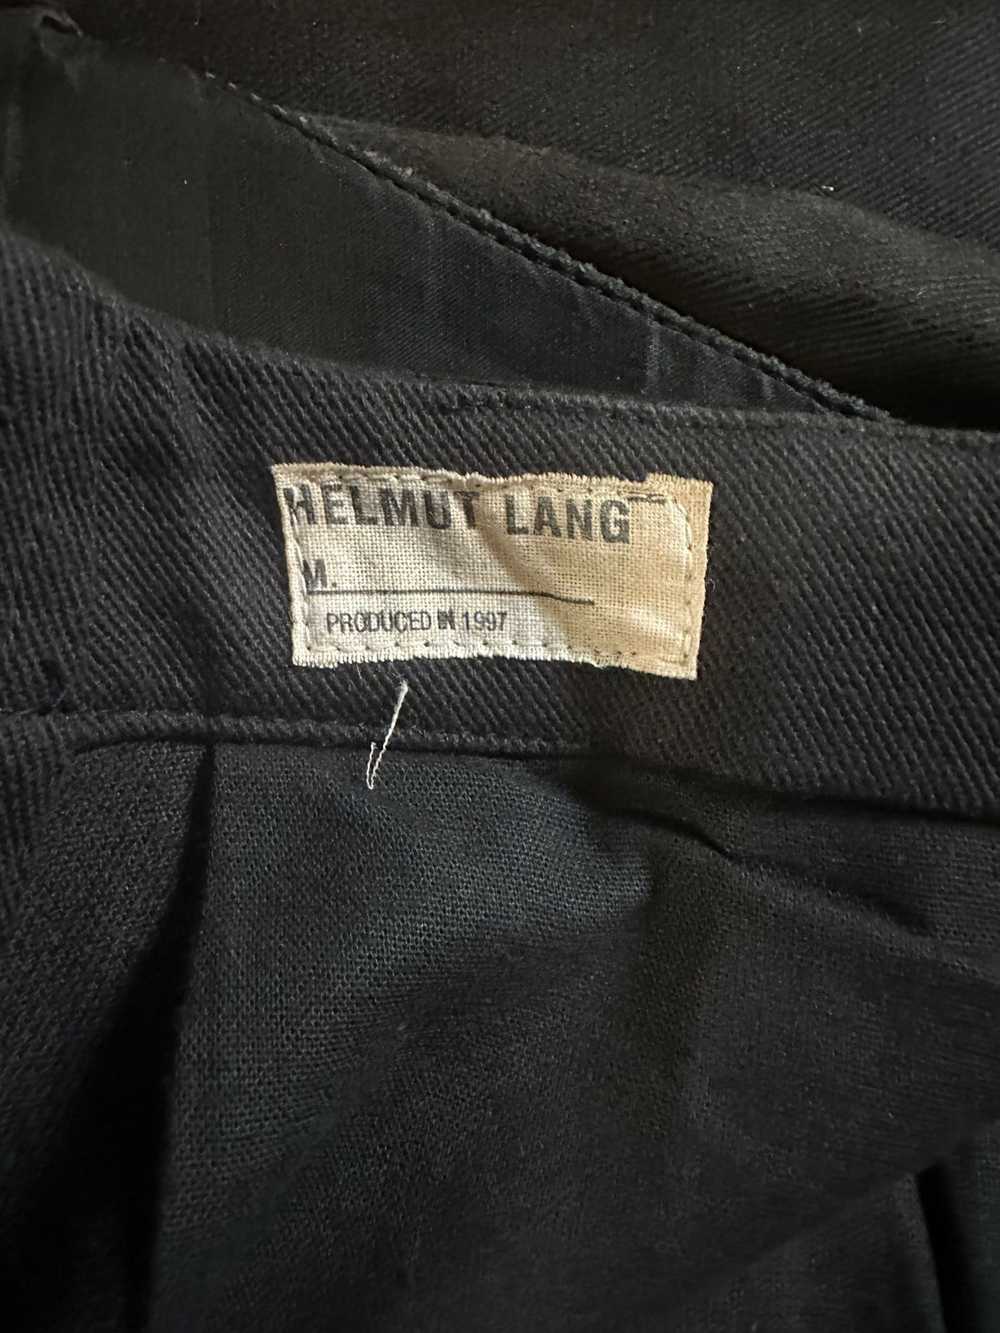 Helmut Lang AW1997 Layered Chiffon Jeans - image 6